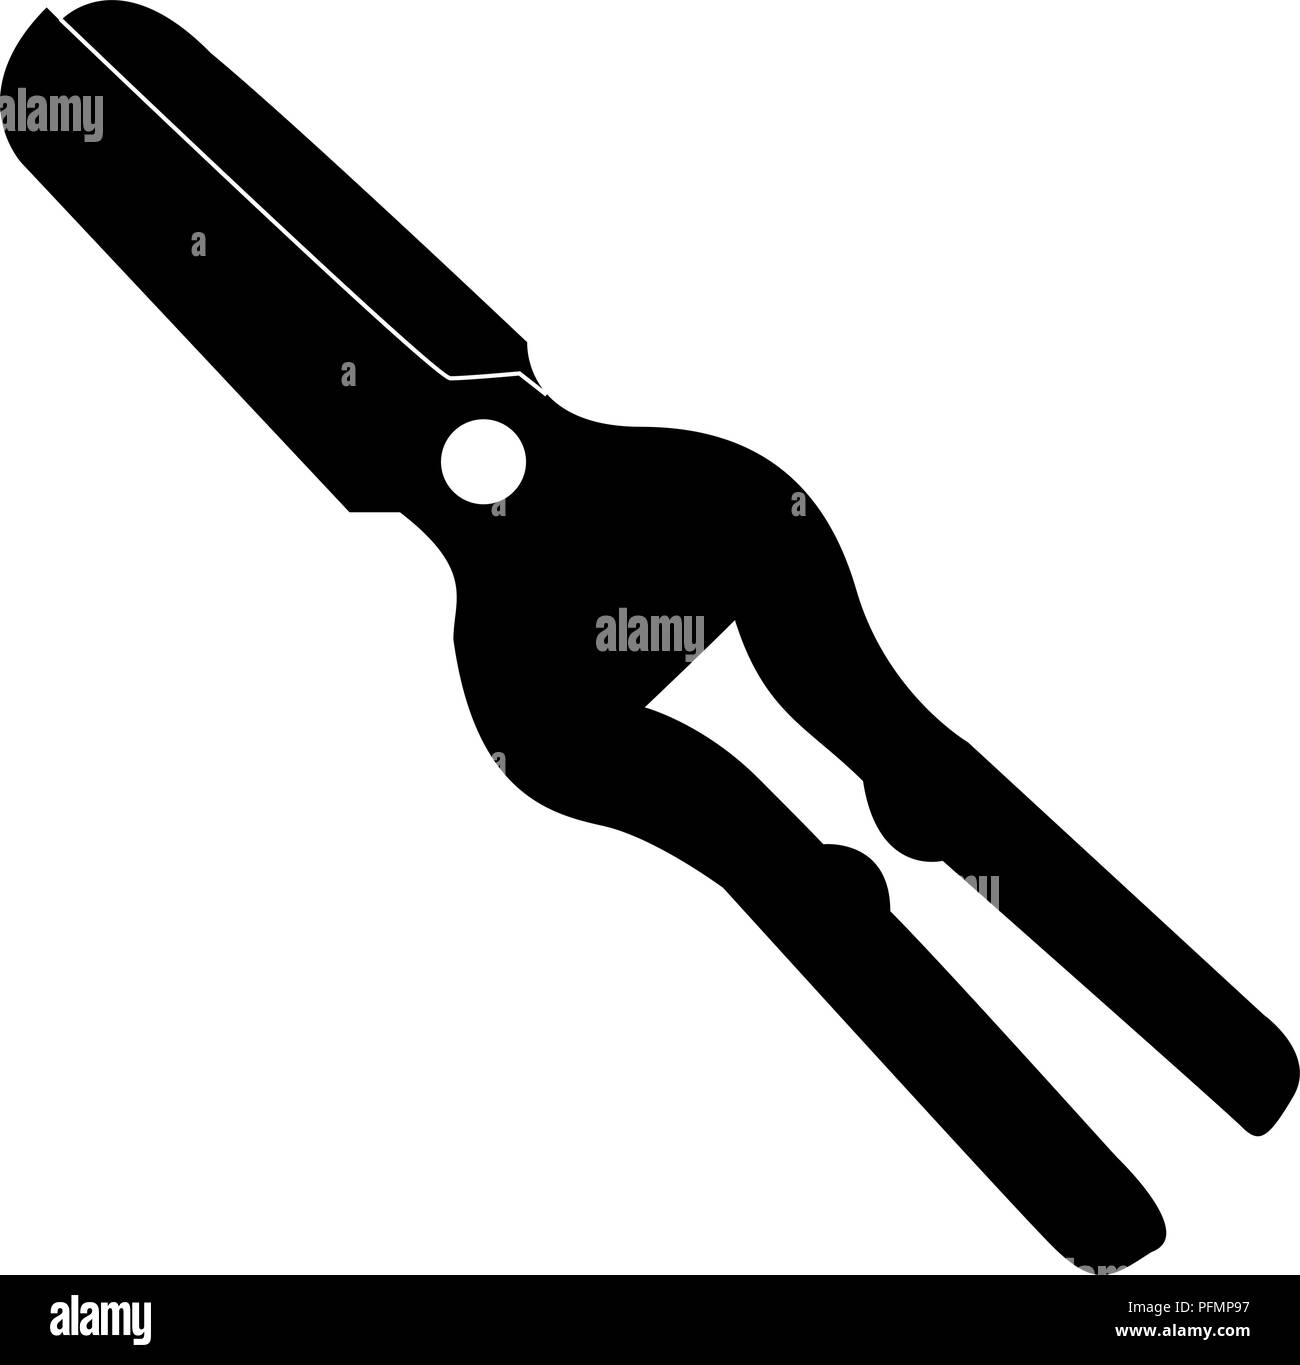 scissors garden silhouette isolated on white background vector illustration Stock Vector